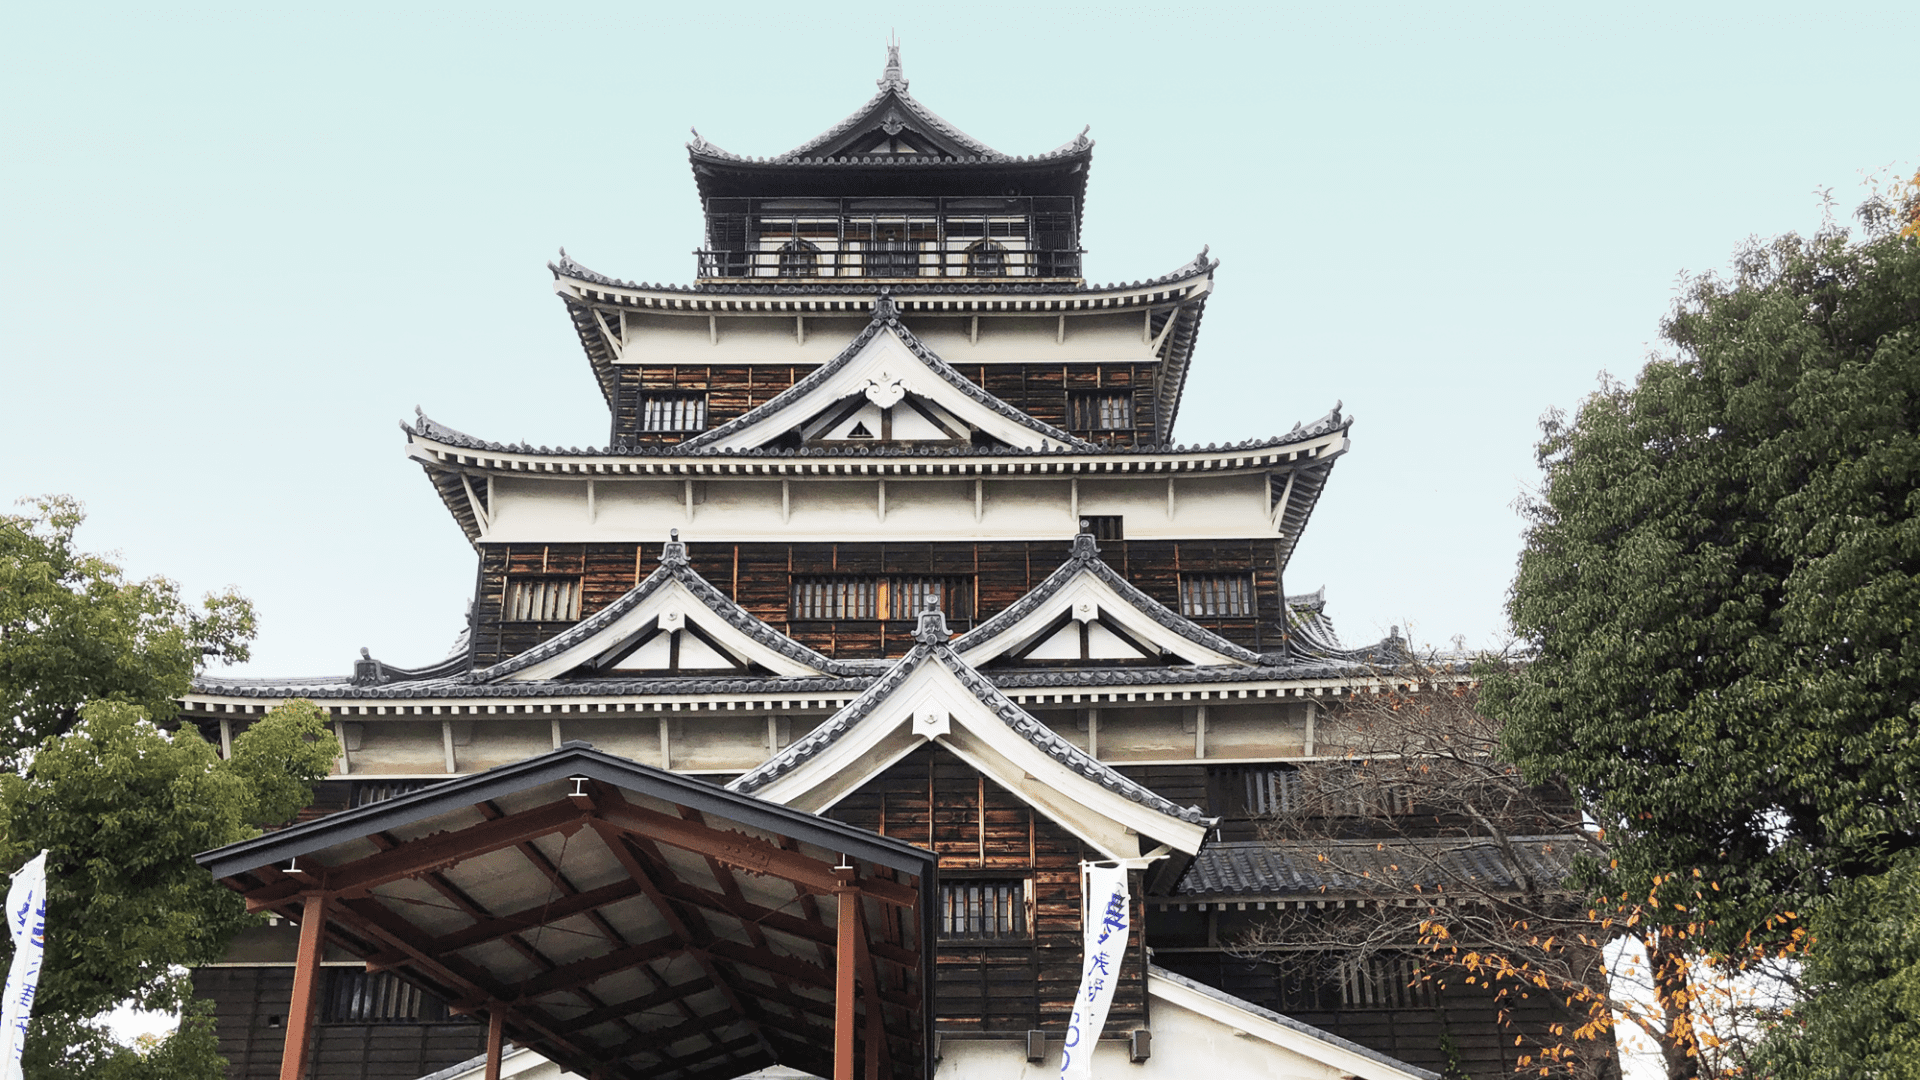 広島城の天守閣で時代の流れを感じる